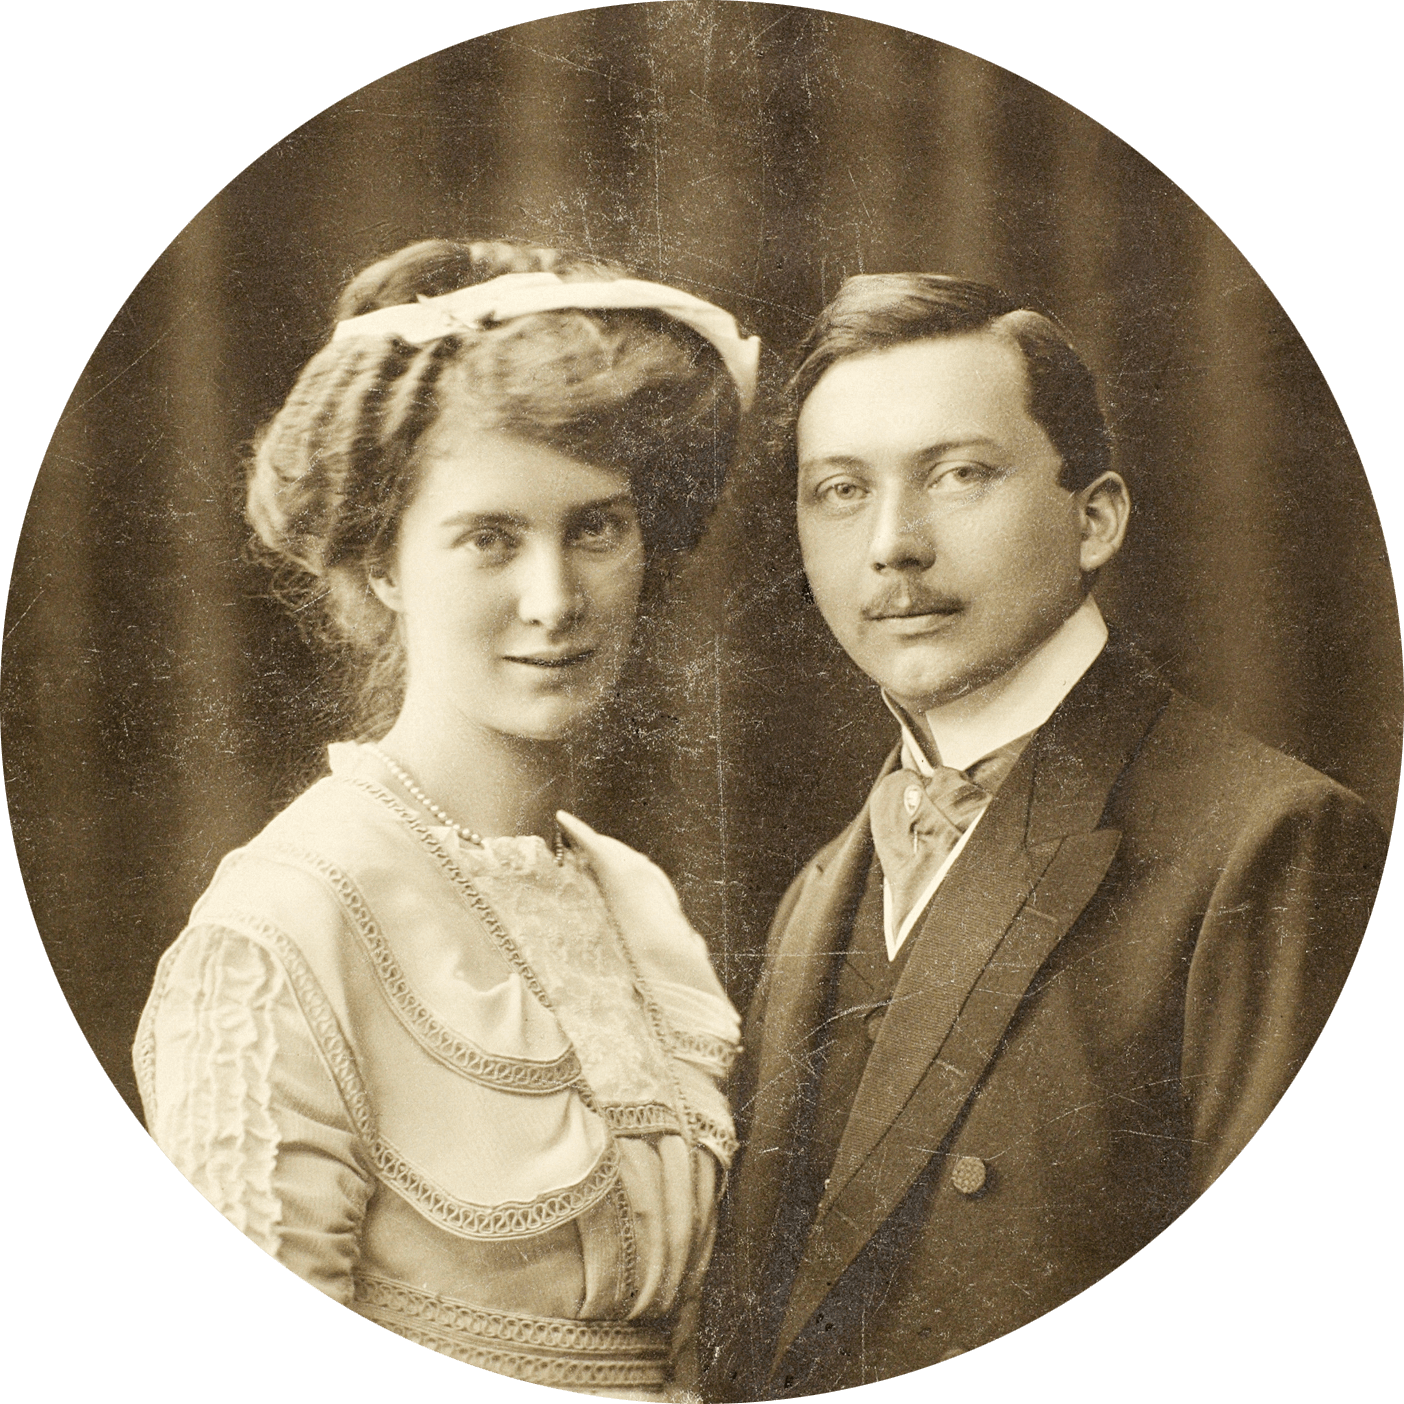 Verlobungsbild von Karl Kessler und Auguste Eisenmann. Die Hochzeit war im Jahre 1911.